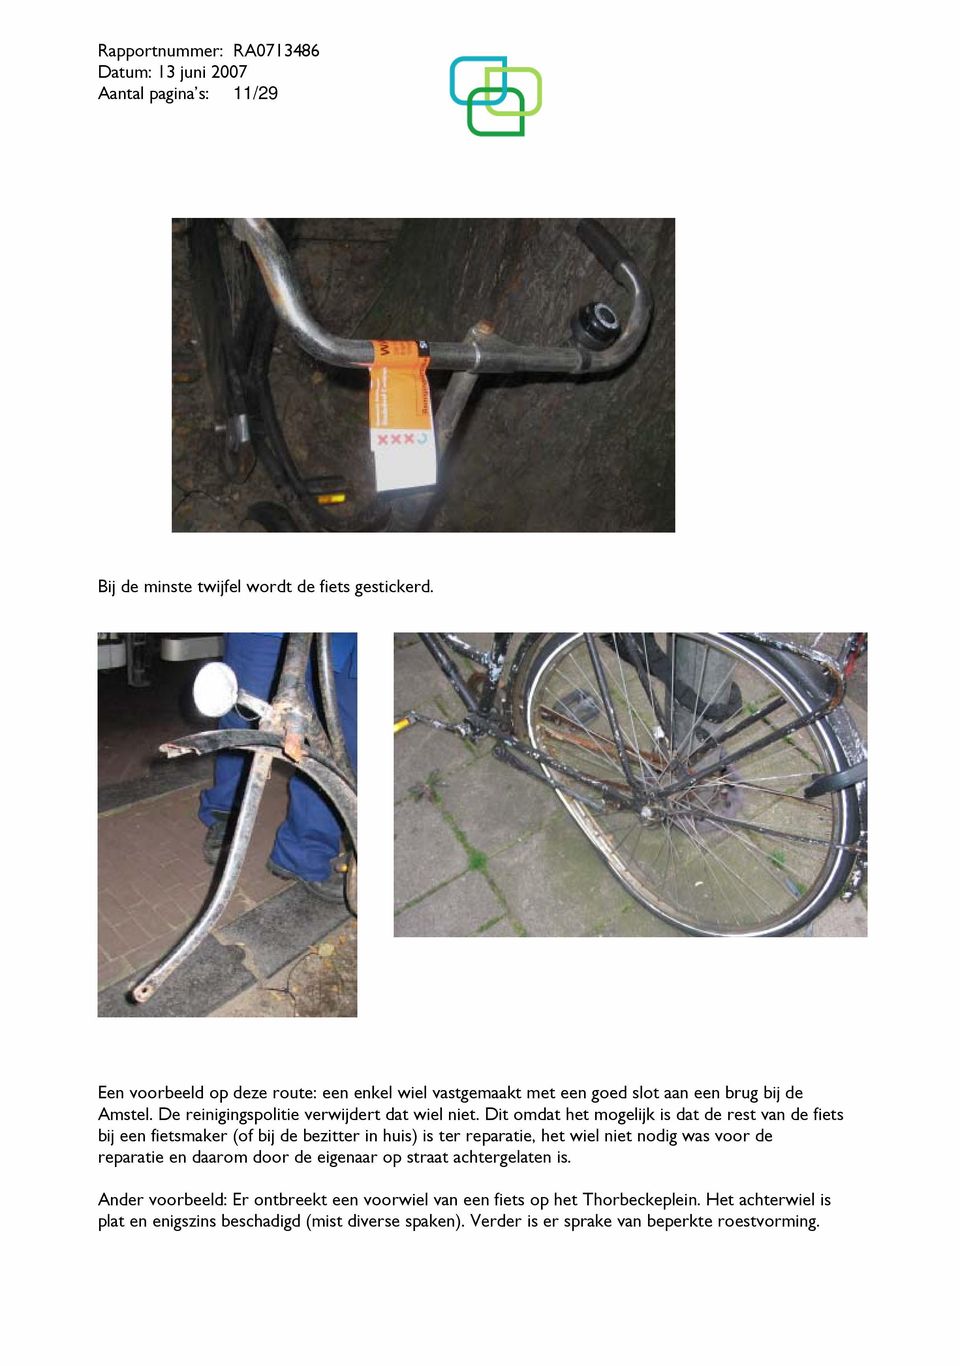 Dit omdat het mogelijk is dat de rest van de fiets bij een fietsmaker (of bij de bezitter in huis) is ter reparatie, het wiel niet nodig was voor de